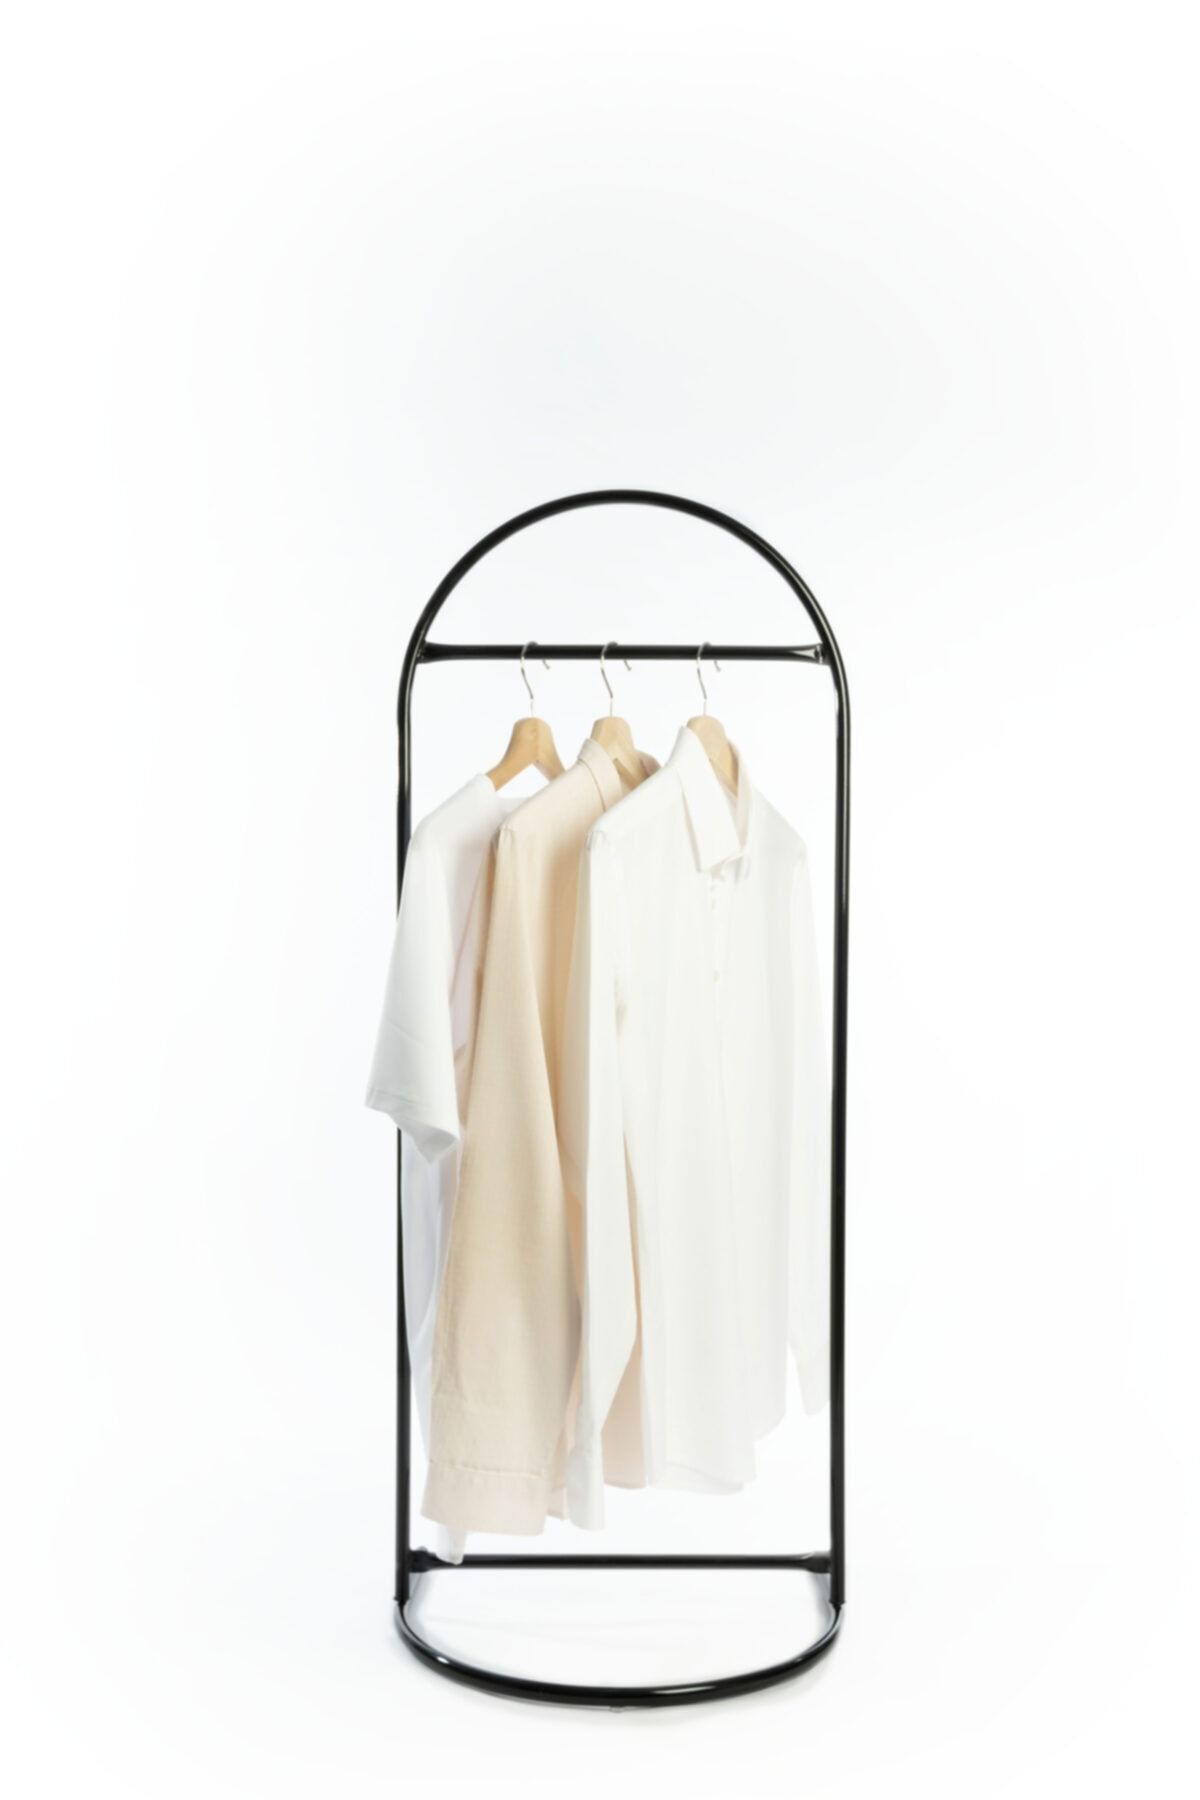 VegaDekor Butik Stil Oval Konfeksiyon Askılığı Siyah Renk Askılık Siyah Ayaklı Askılık Kıyafet Askılığı